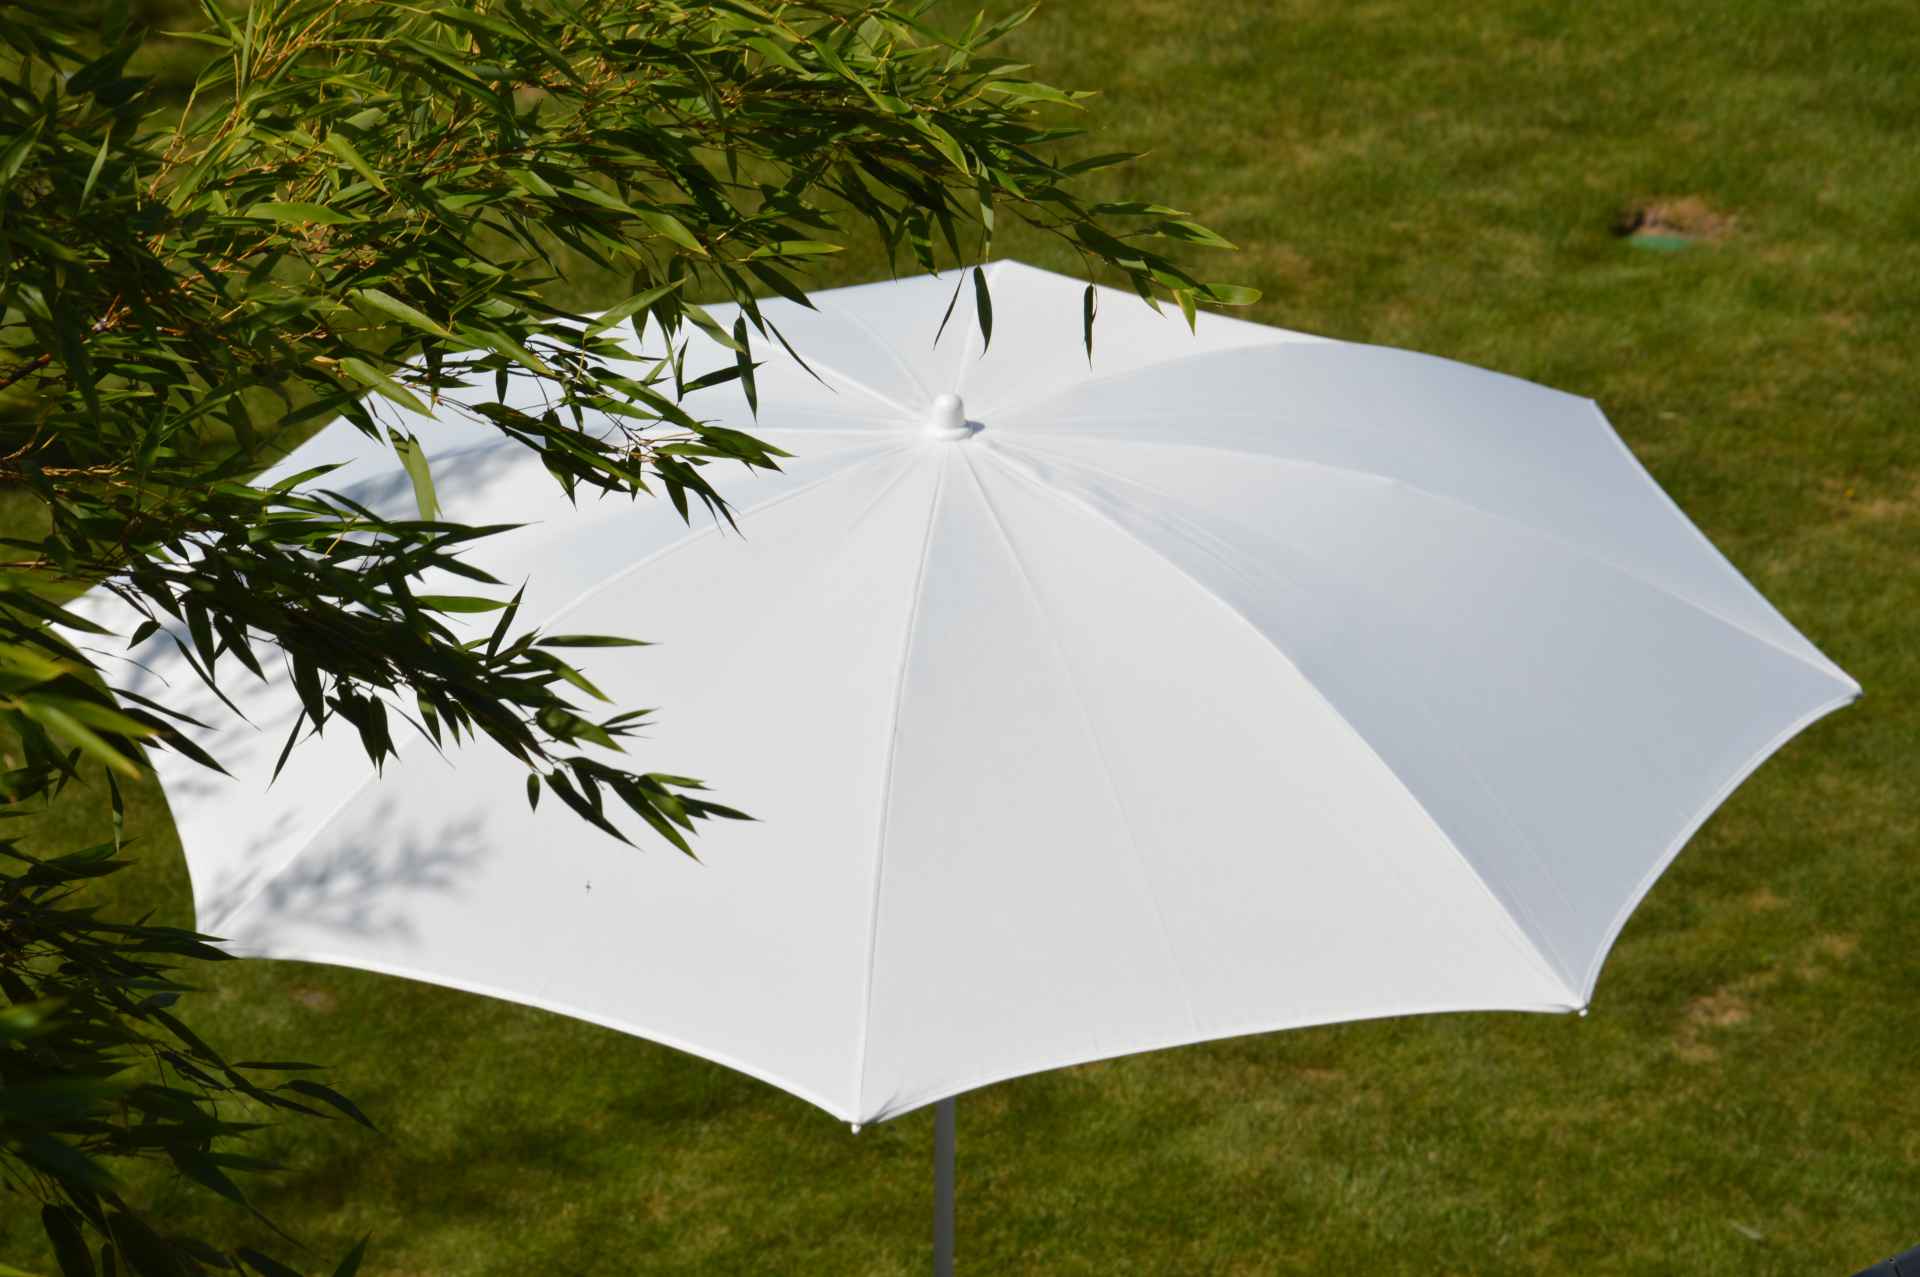 Der Sonnenschirm Revenna überzeugt mit seinem modernen Design. Die Form des Schirms ist Rund. Designet wurde er von der Marke Jan Kurtz und hat die Farbe Weiß.